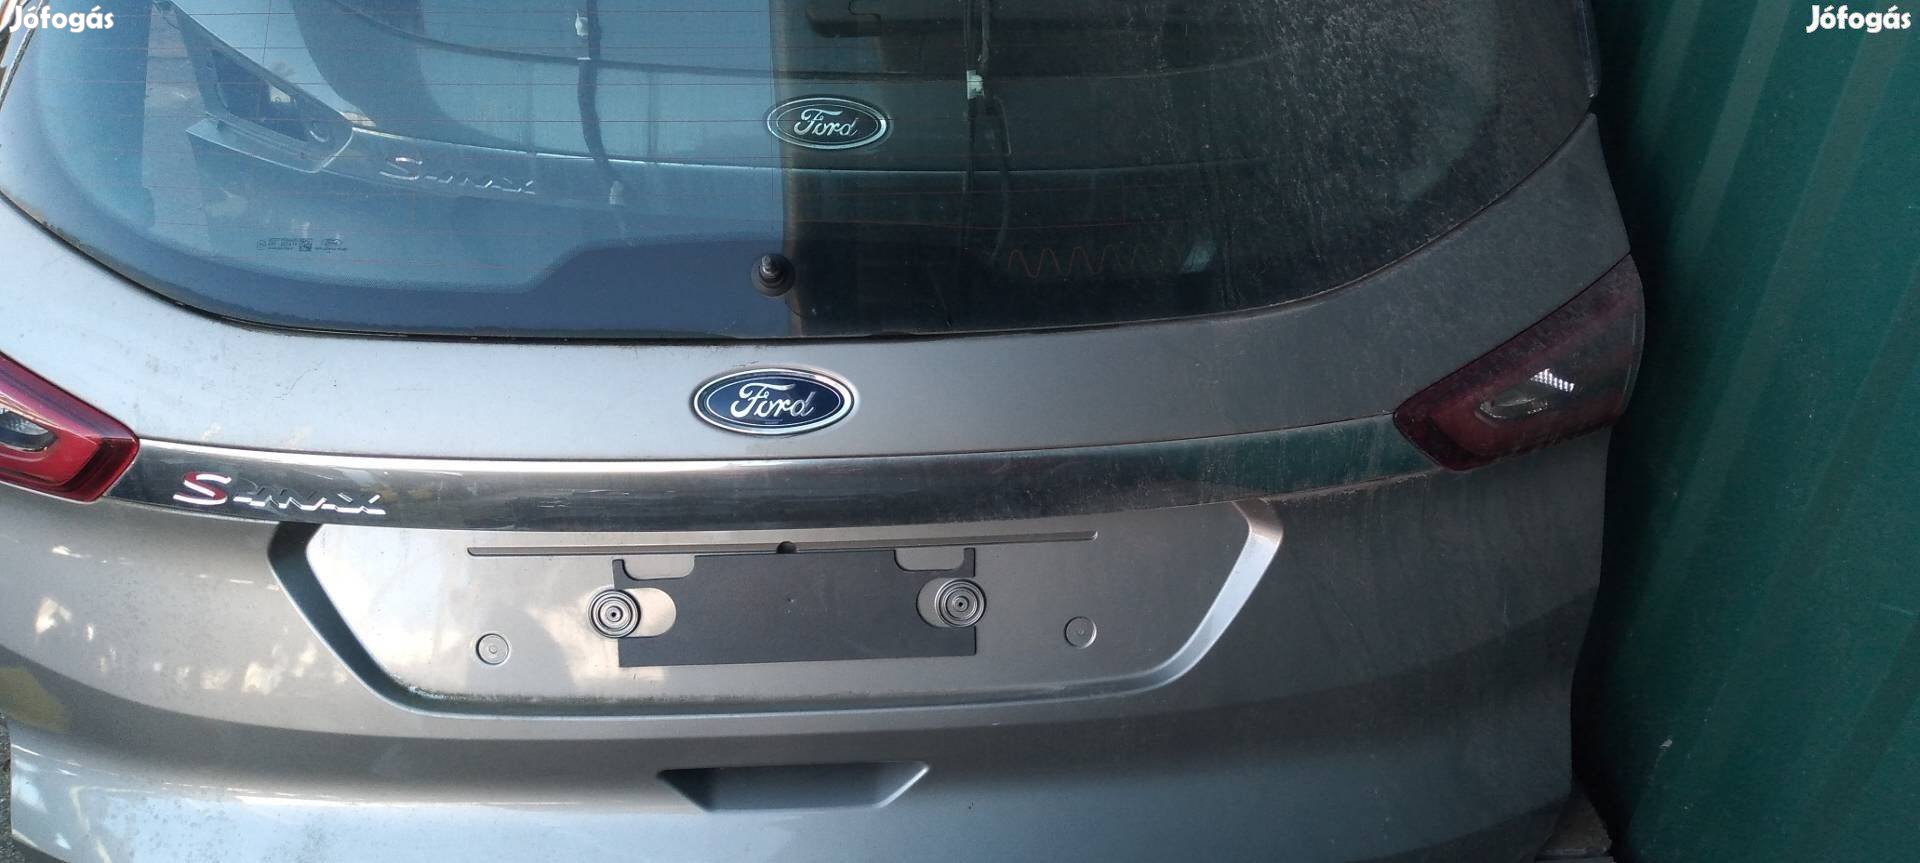 Eladó Ford S-max csomagtér ajtó 2014-től